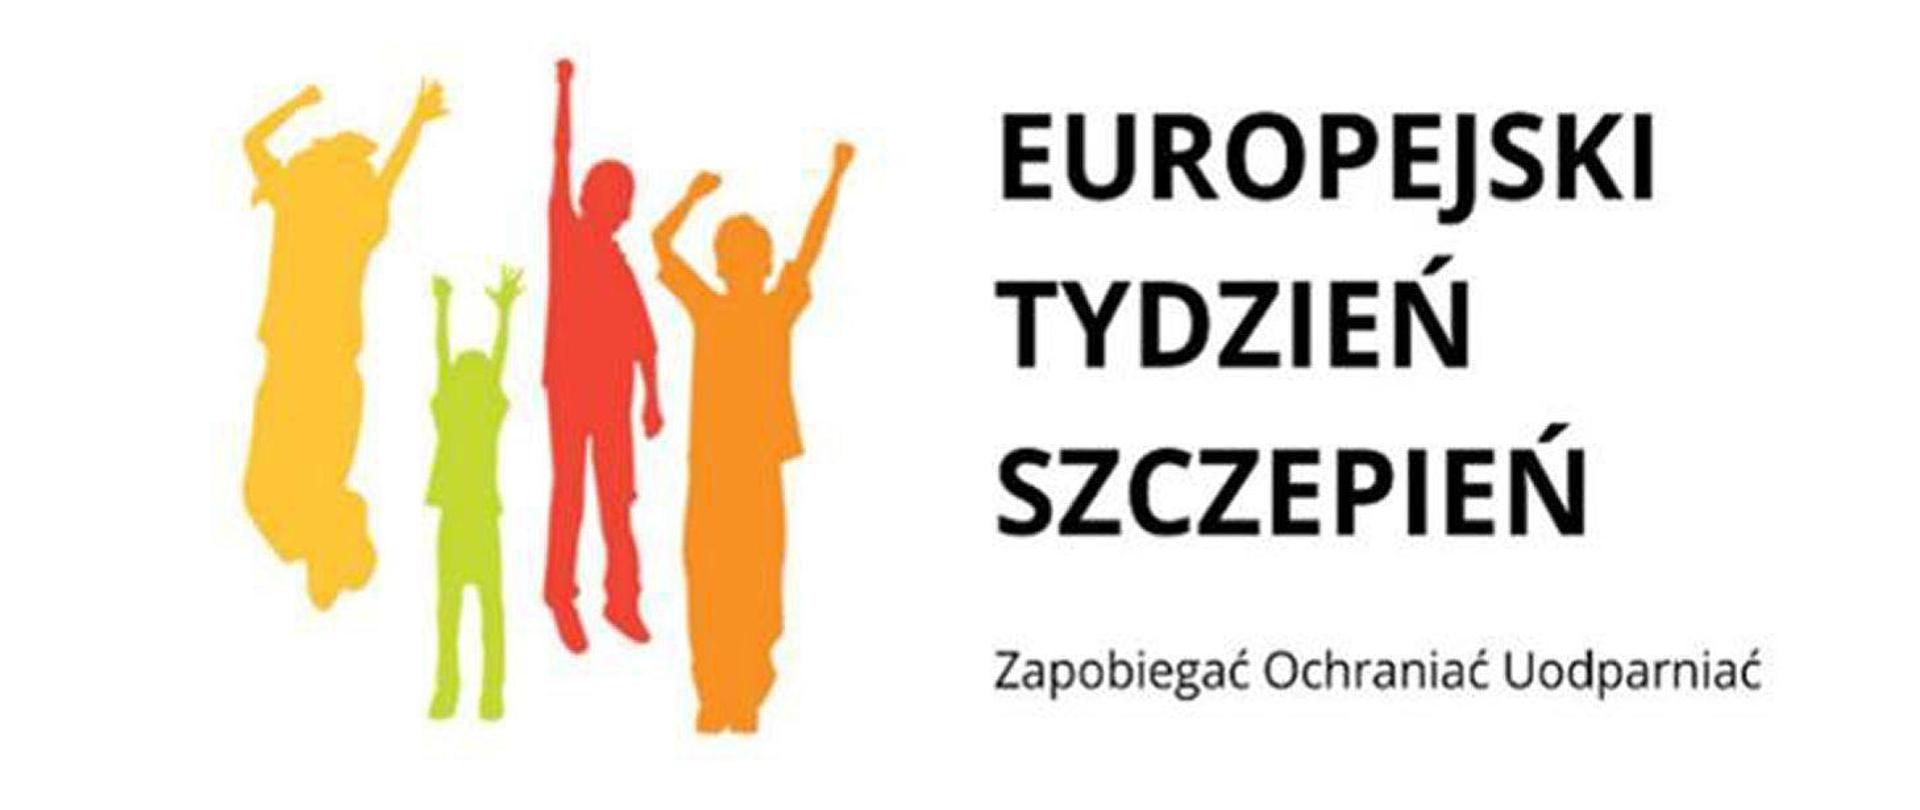 Po lewej stronie zarys czterech ludzkich postaci z podniesionymi rękoma, po prawej napis: Europejski Tydzień Szczepień. Zapobiegać Ochraniać Uodparniać.